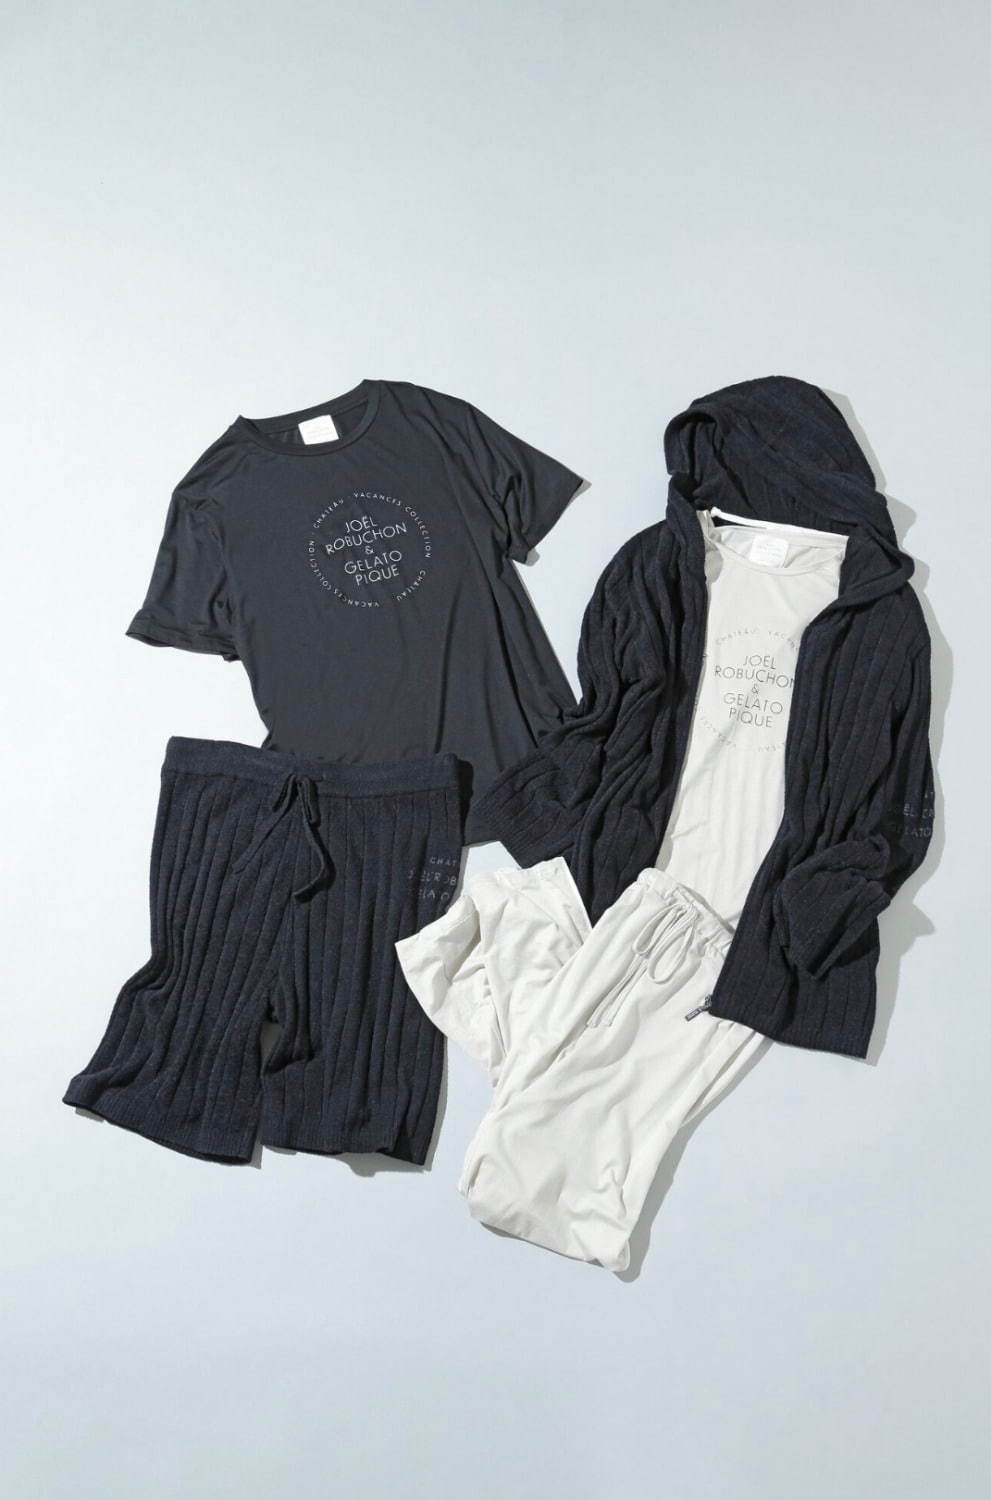 ジェラート ピケ ジョエル ロブションの新作ルームウェア 男女ペアで着られるパジャマやふんわりニット ファッションプレス